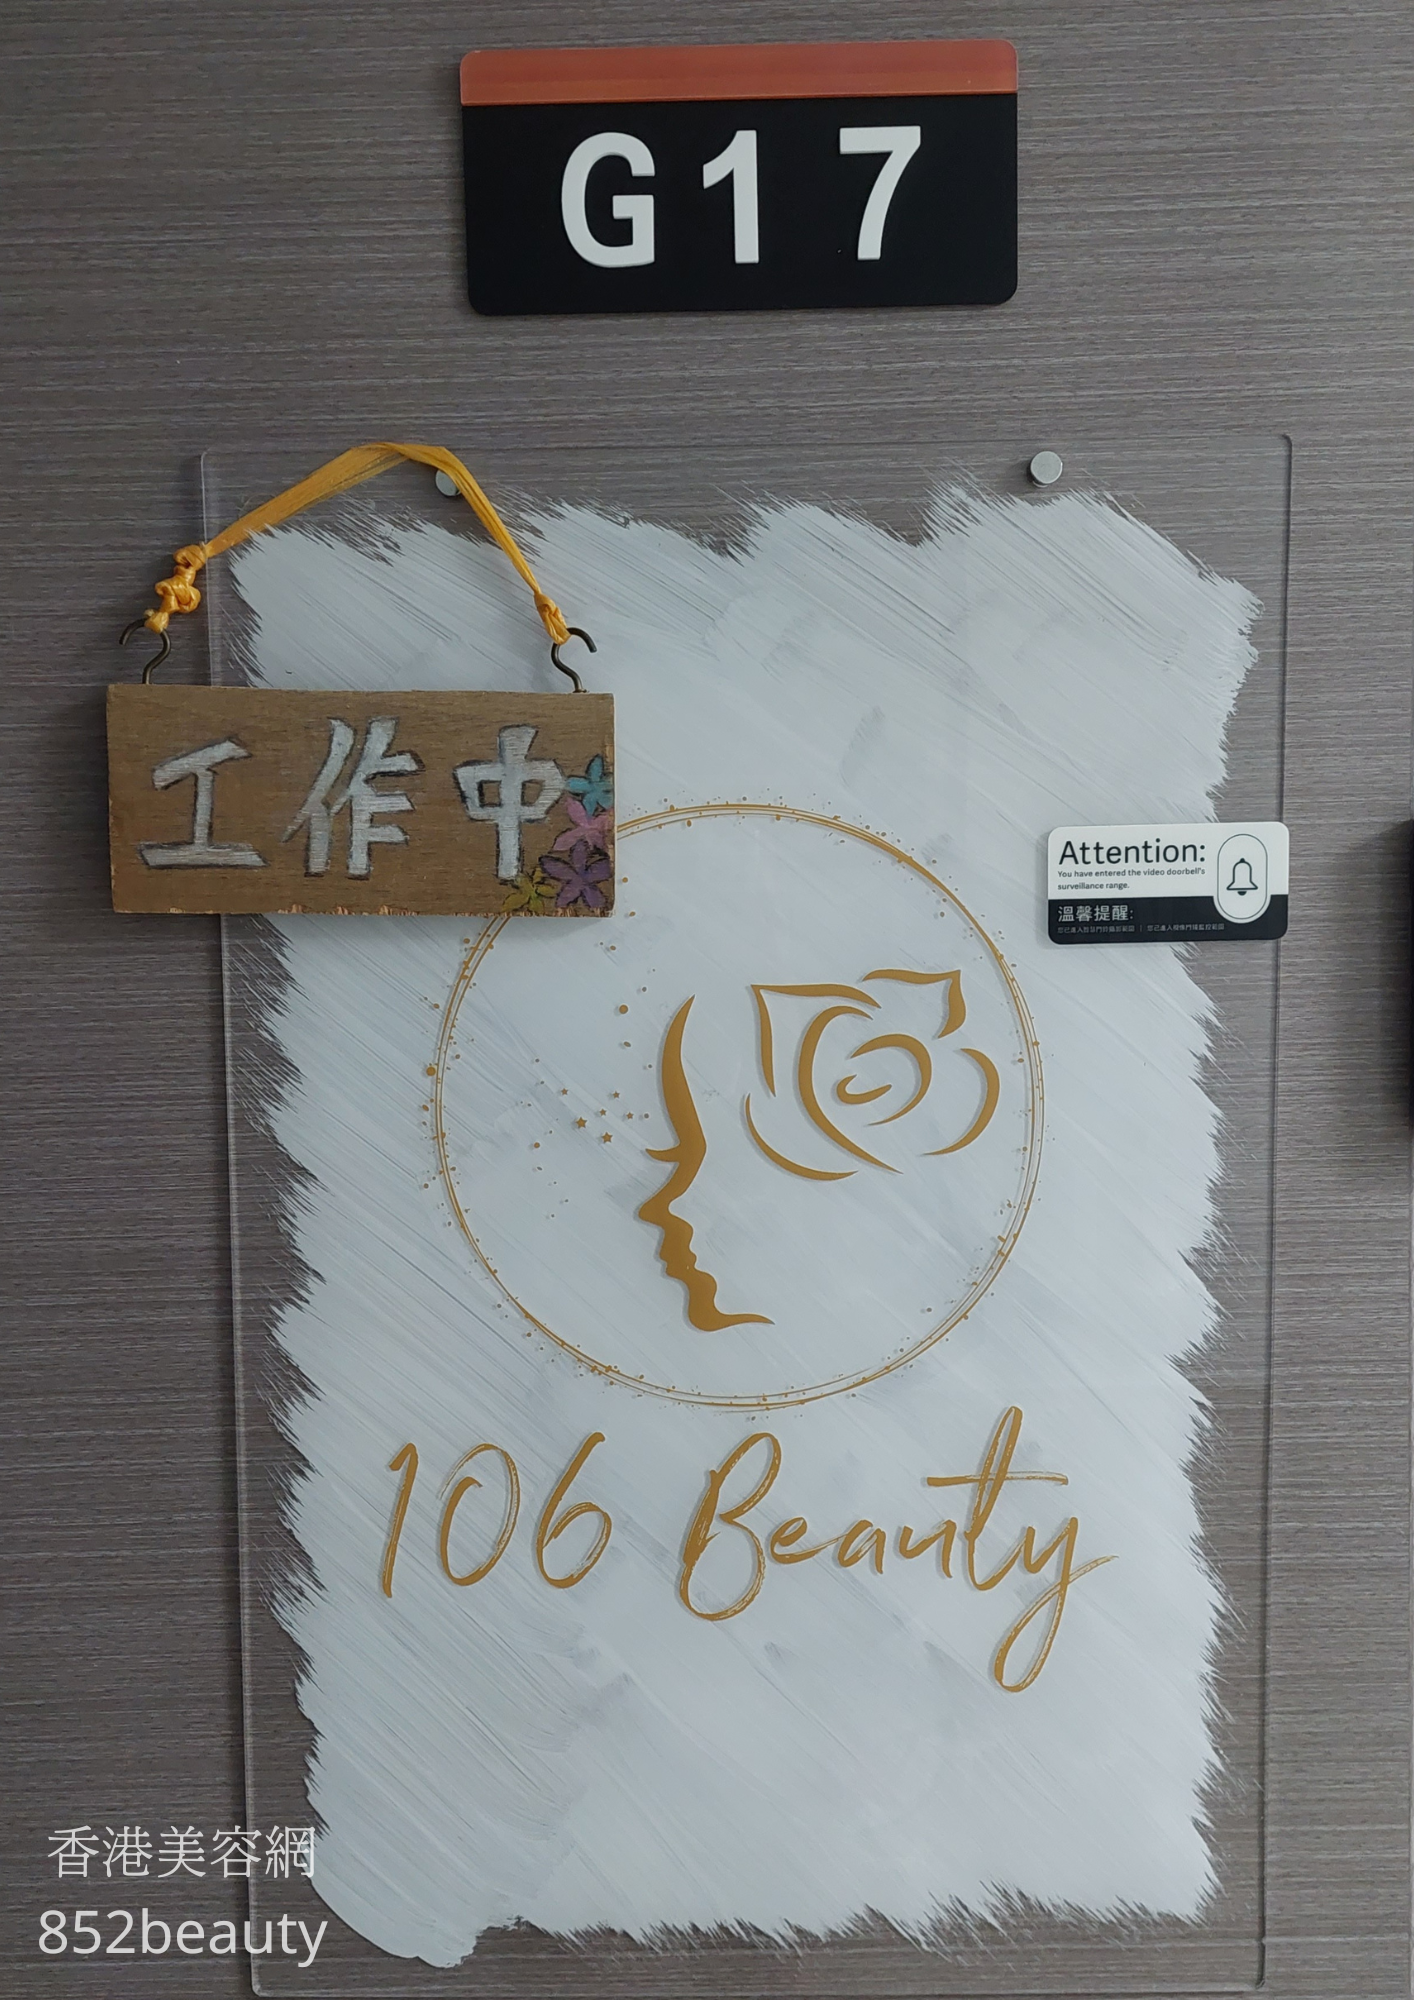 眼部護理: 106 Beauty